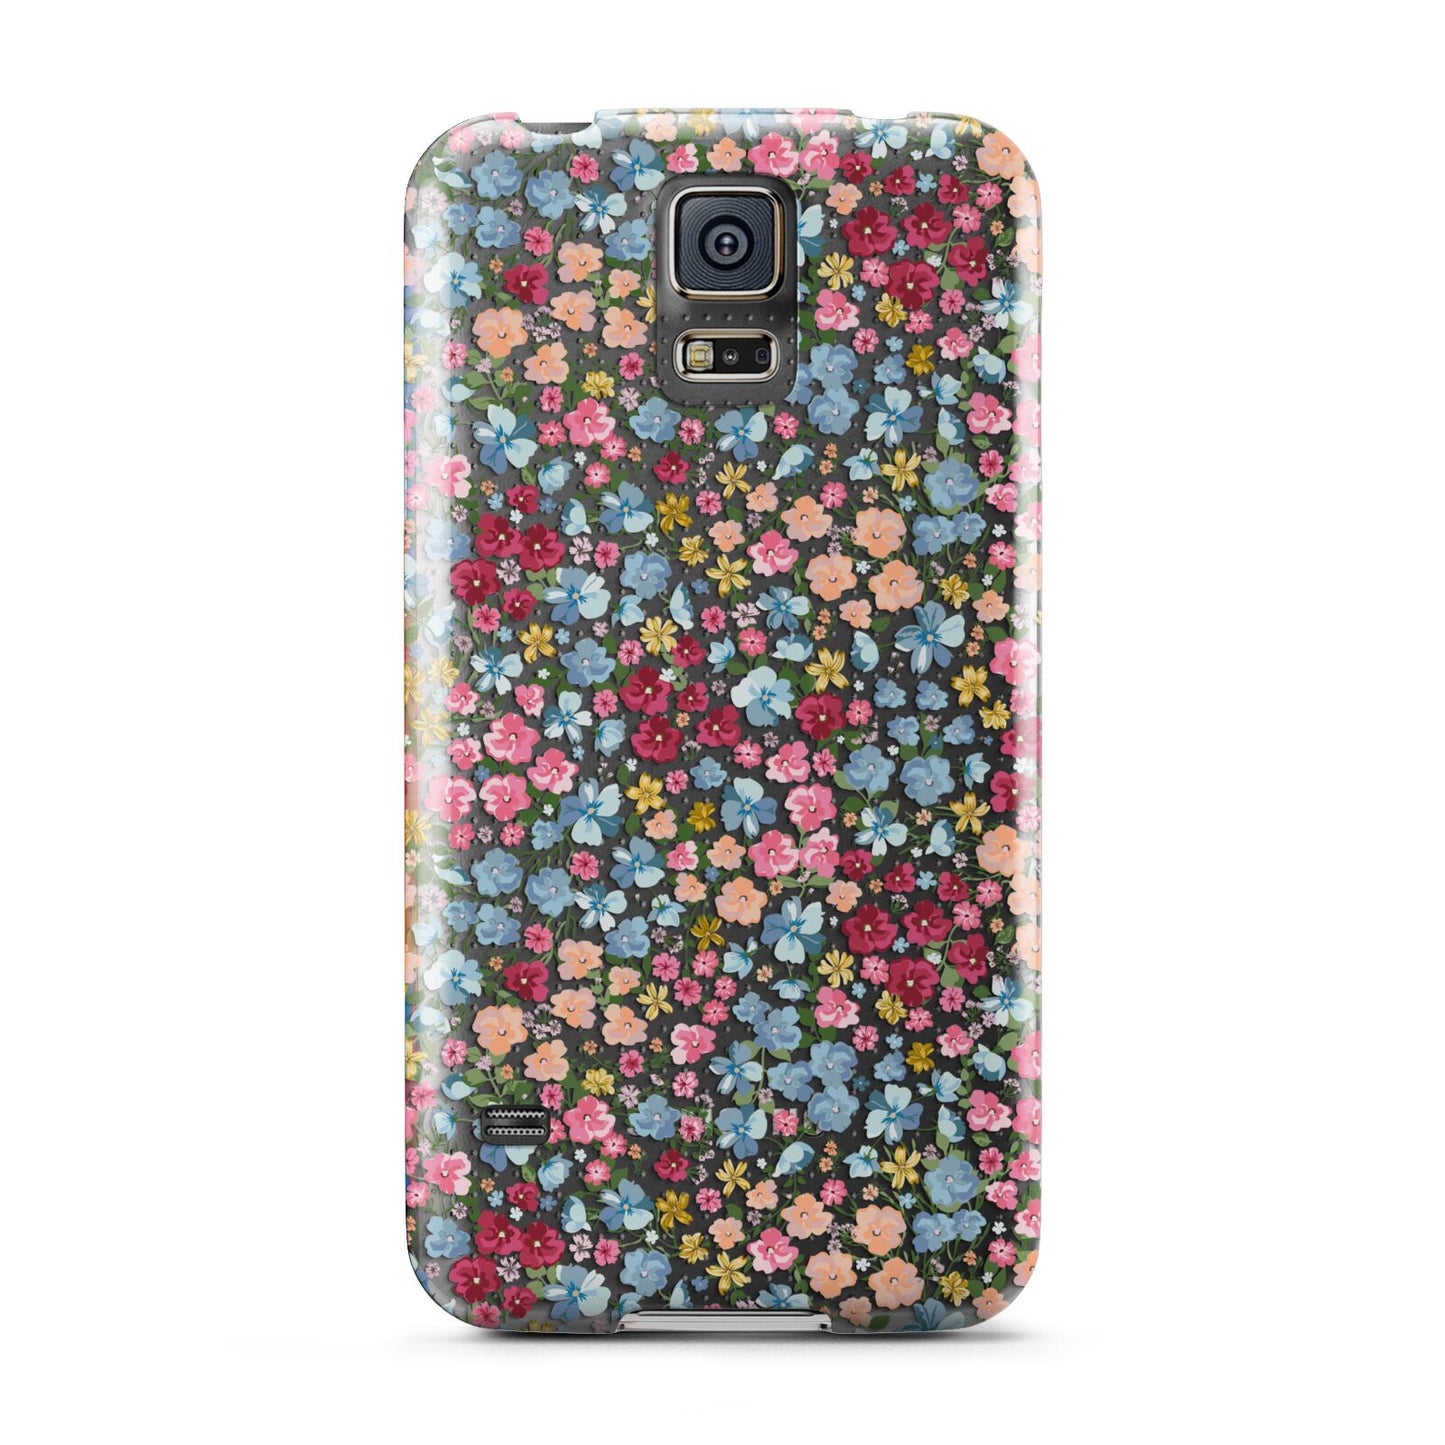 Floral Meadow Samsung Galaxy S5 Case